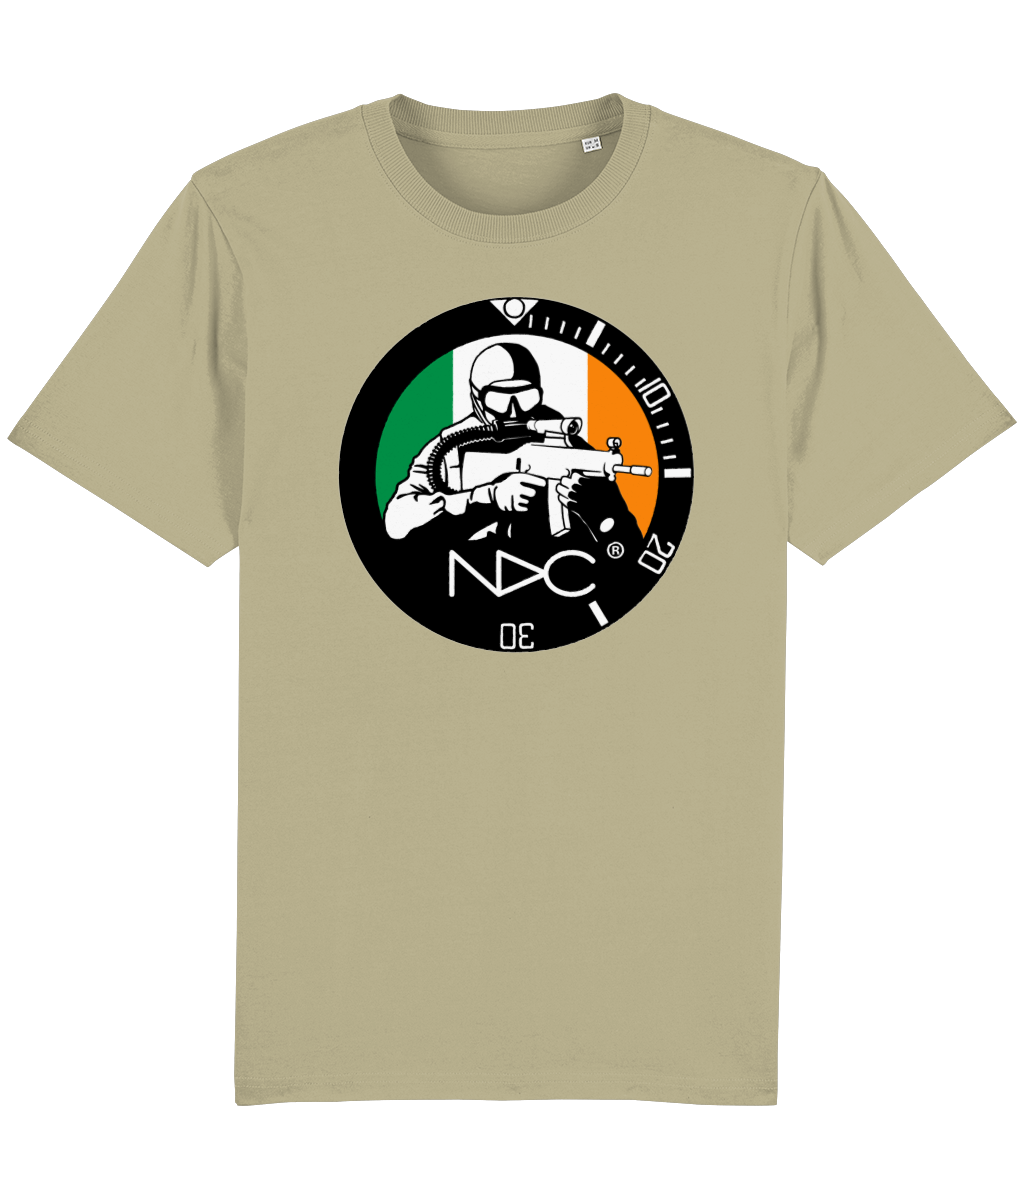 NDC Ireland Teeshirt - NDC Straps